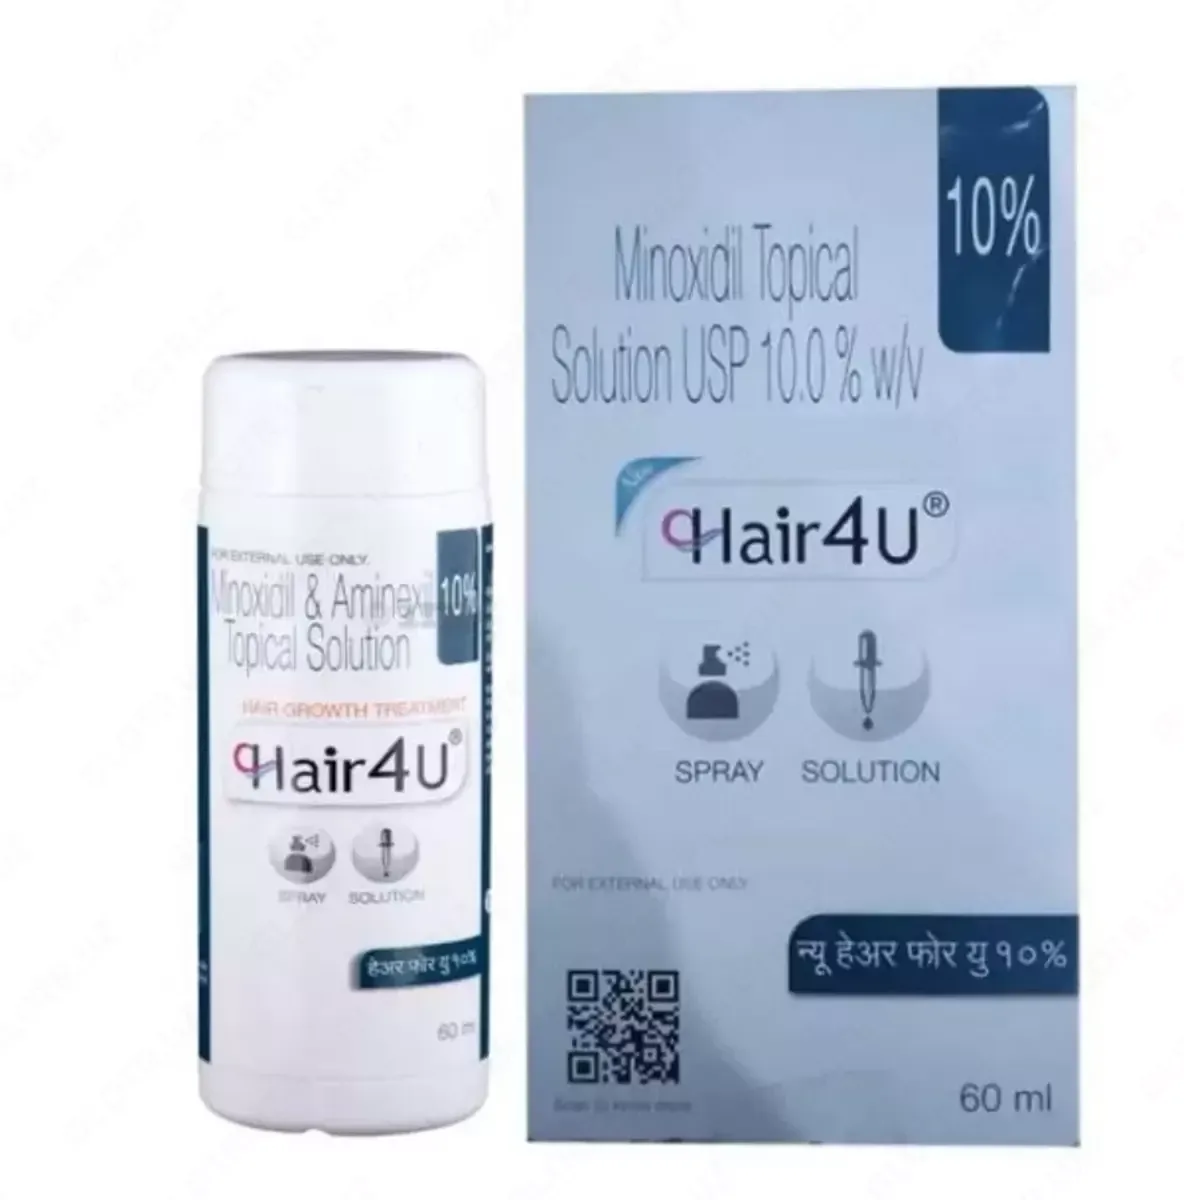 Minoxidil 10% - замедляет и предотвращает выпадение волос#1